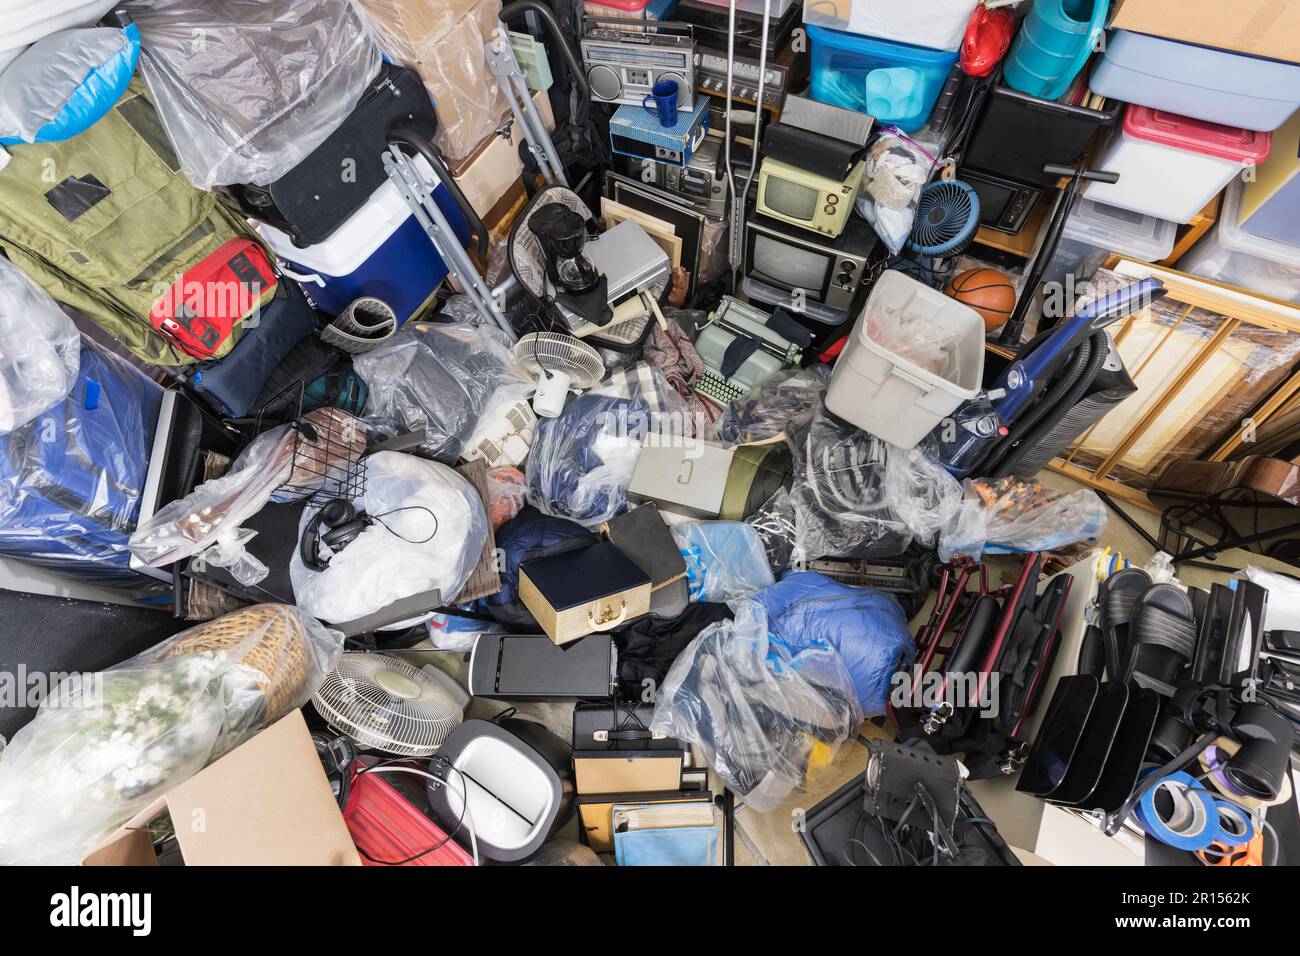 Schrotthaufen mit Kleidertaschen, Haushaltsgegenständen, alter Elektronik und verschiedenen Gegenständen. Stockfoto